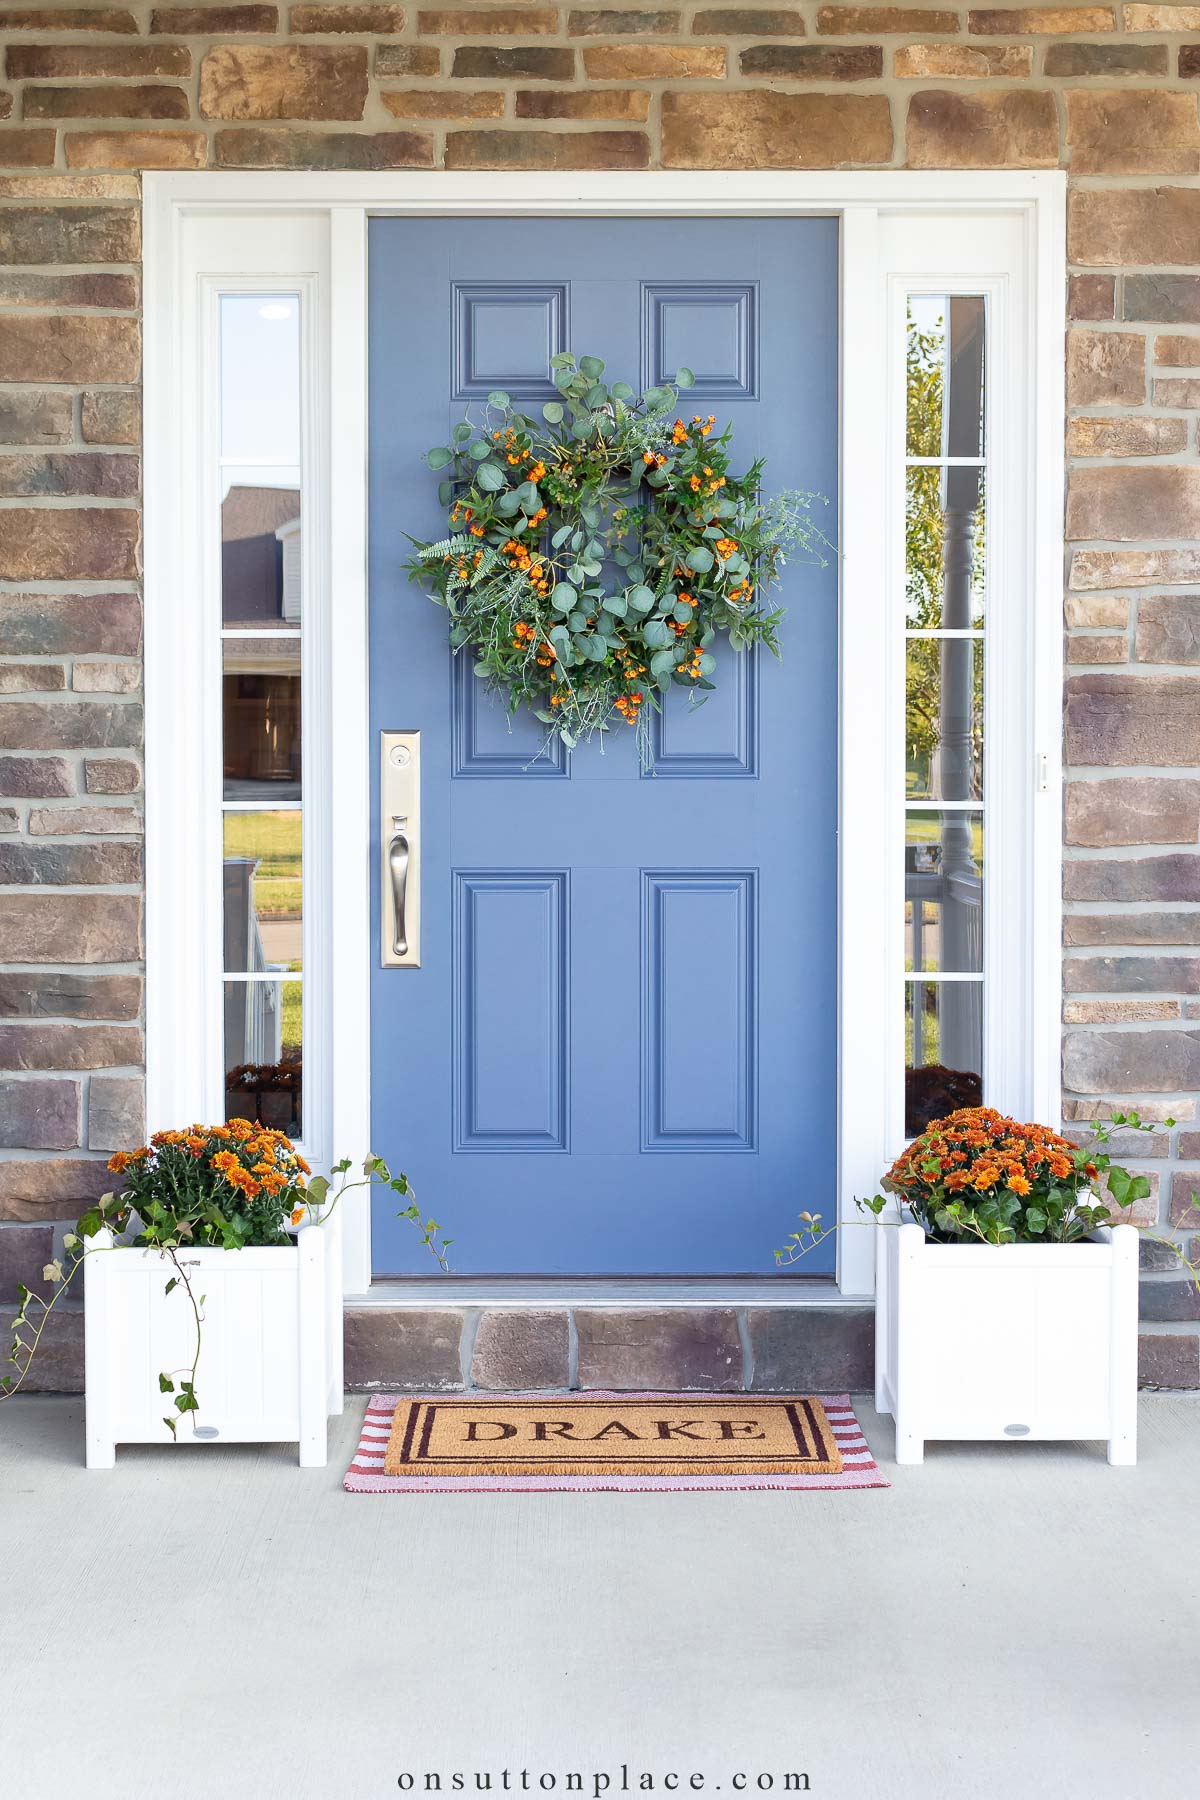 Beautiful Round Door Signs for Your Front Door - Best First